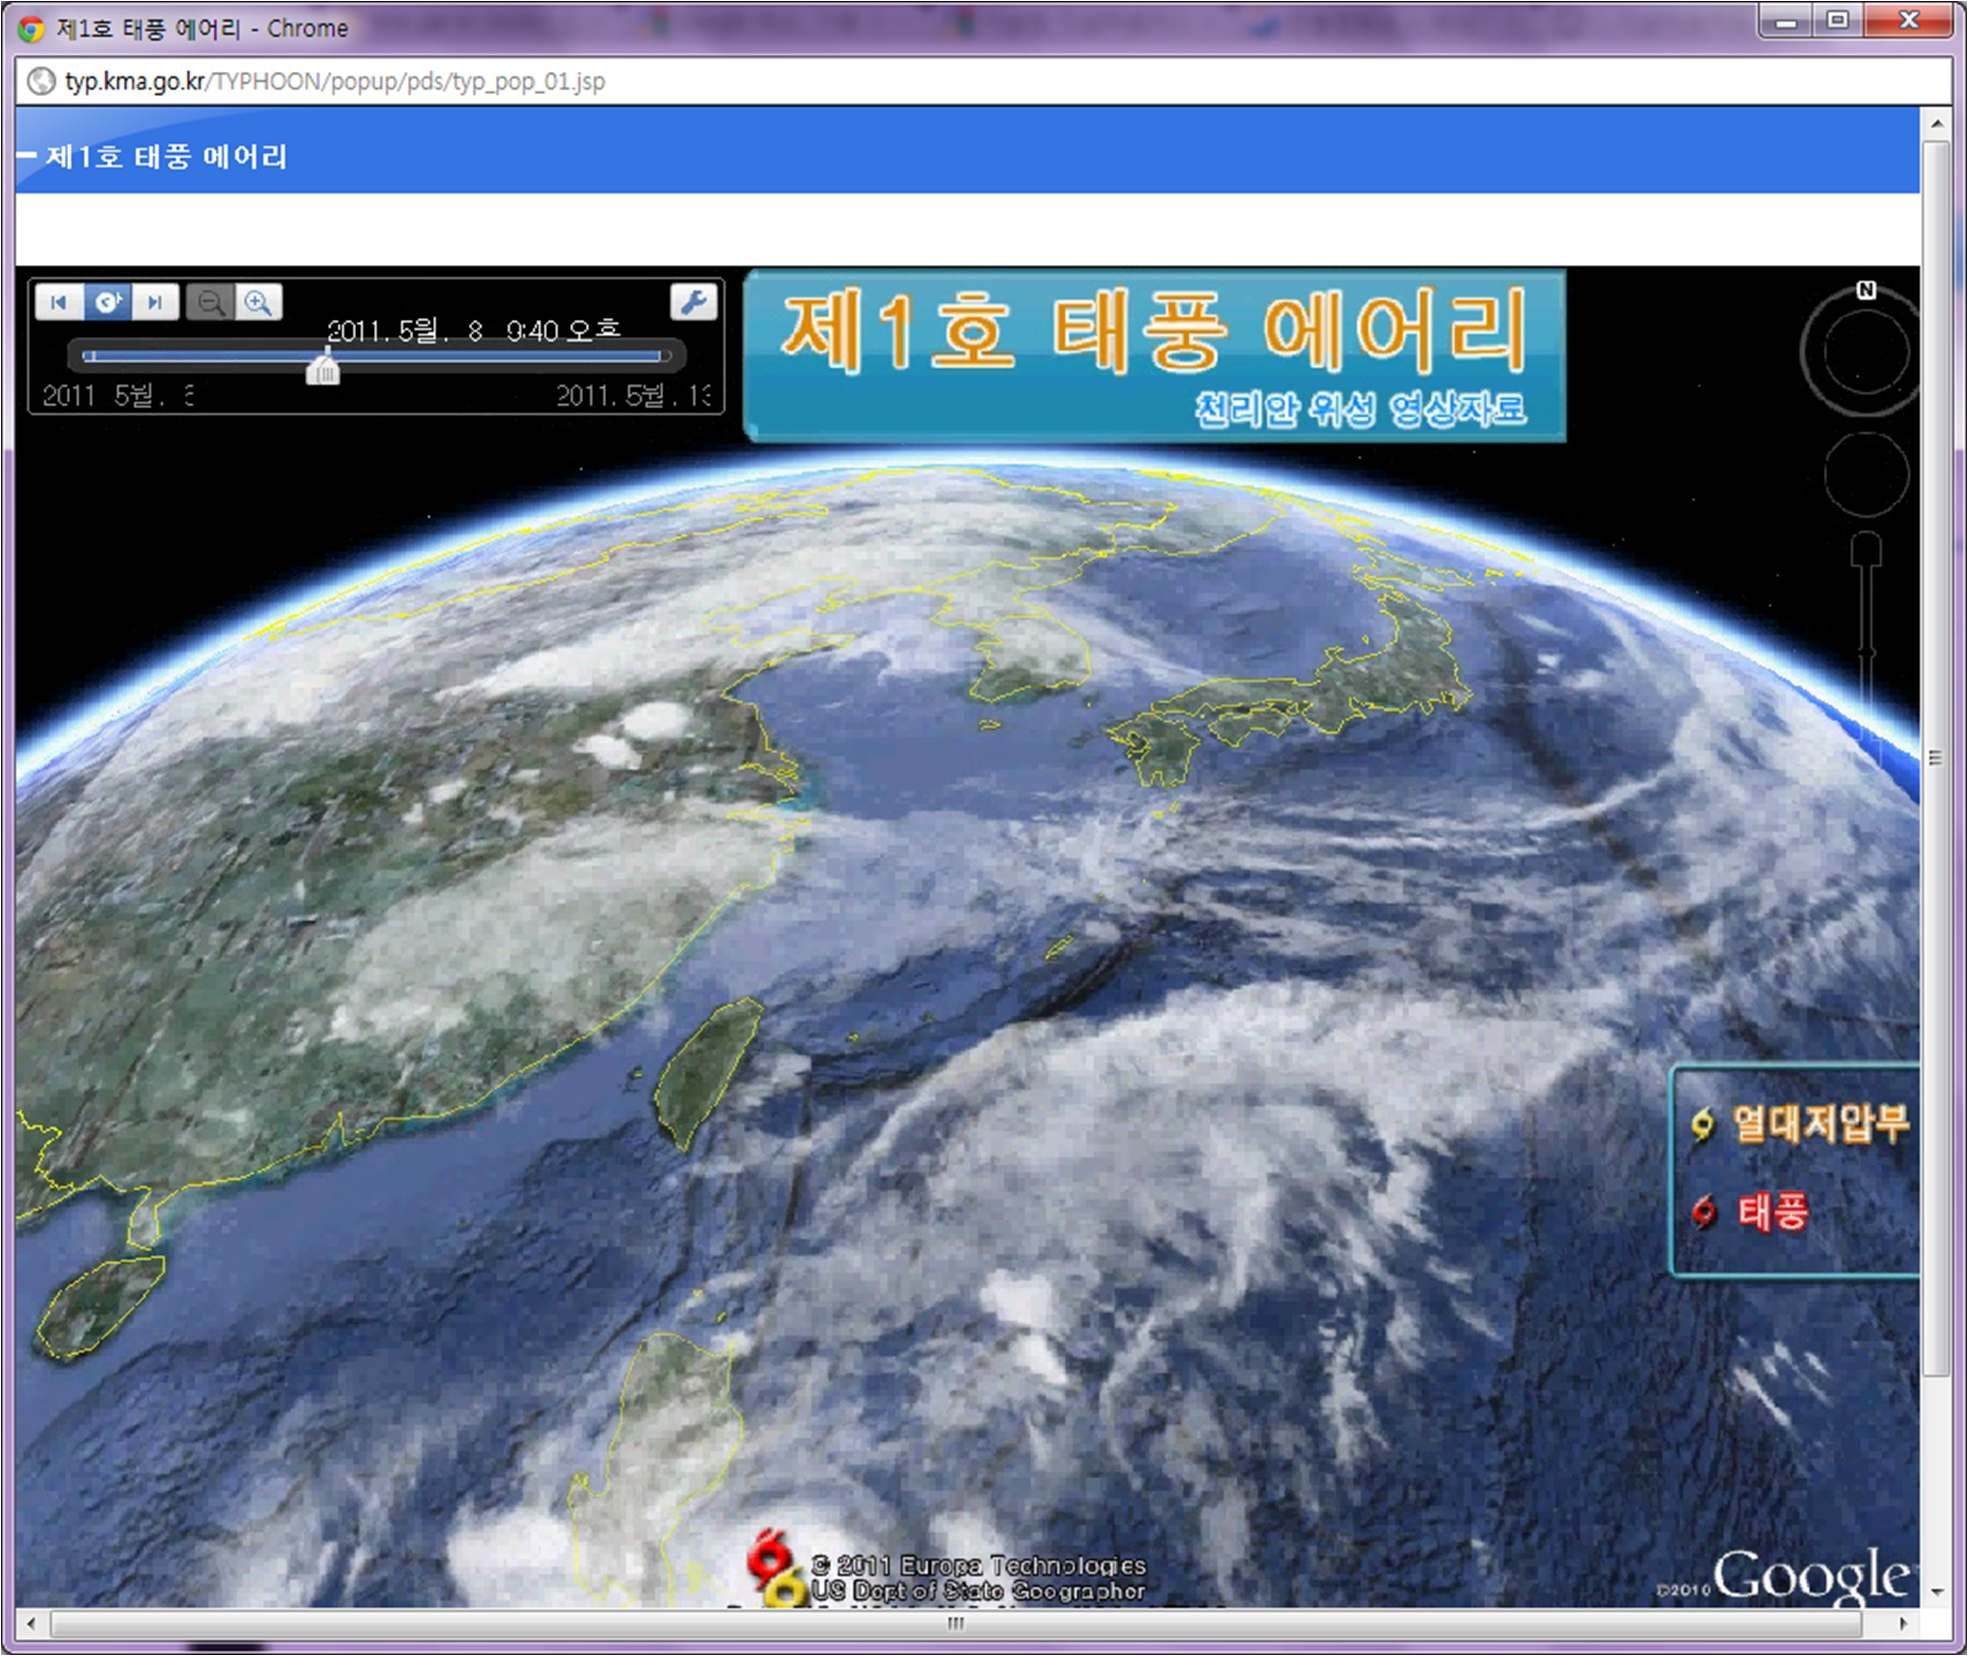 그림 2.7 Google Earth 기반 천리안 위성 영상의 애니메이션